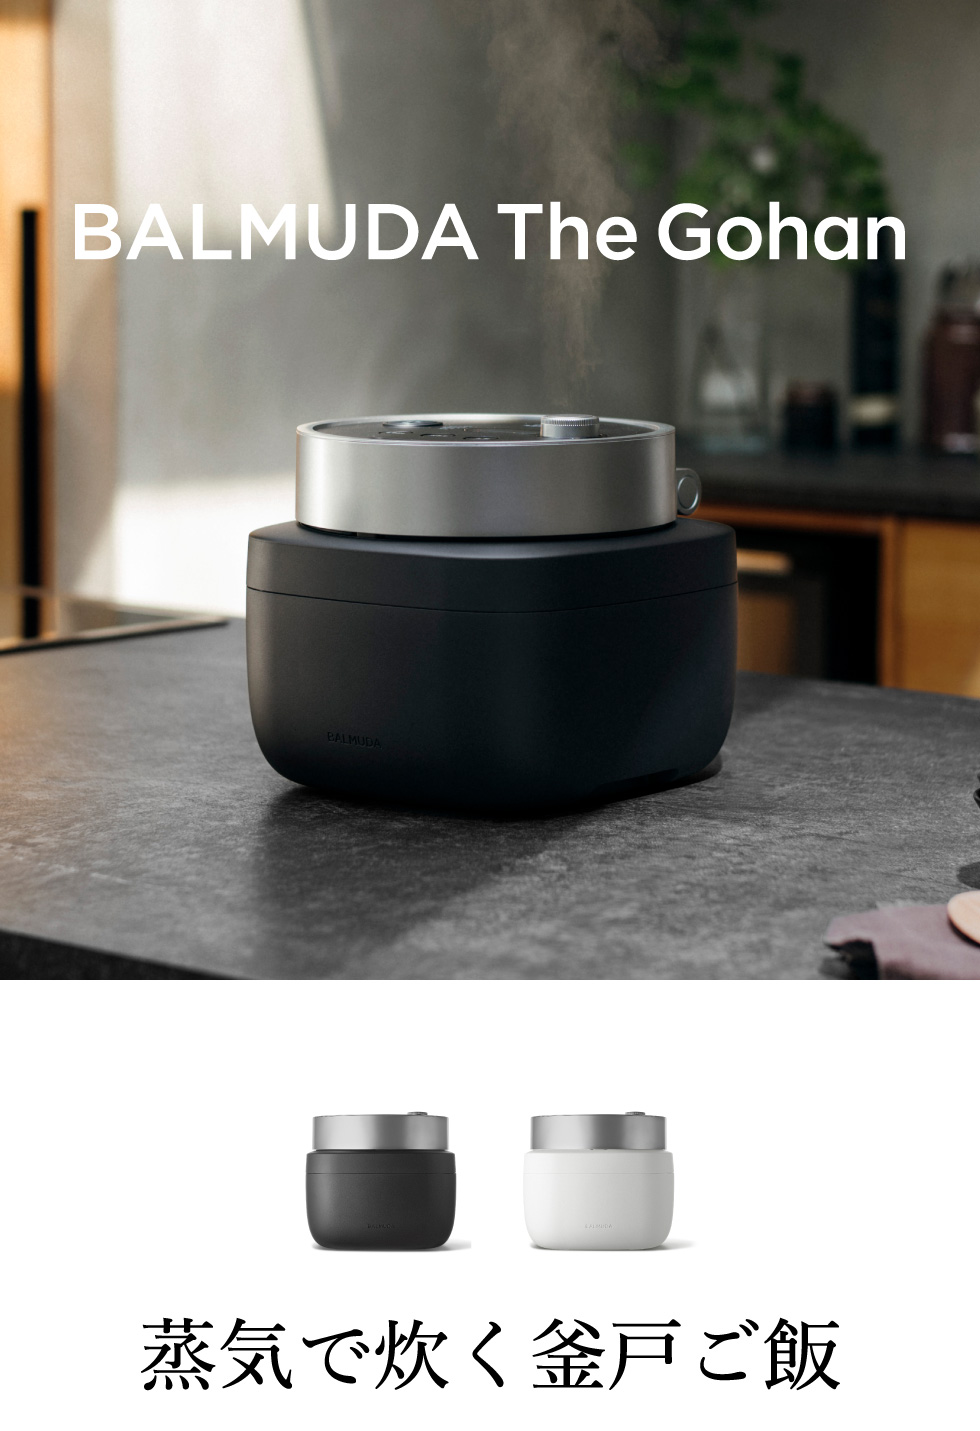 バルミューダ ザ・ゴハン BALMUDA The Gohan 電気炊飯器 3合 正規販売 